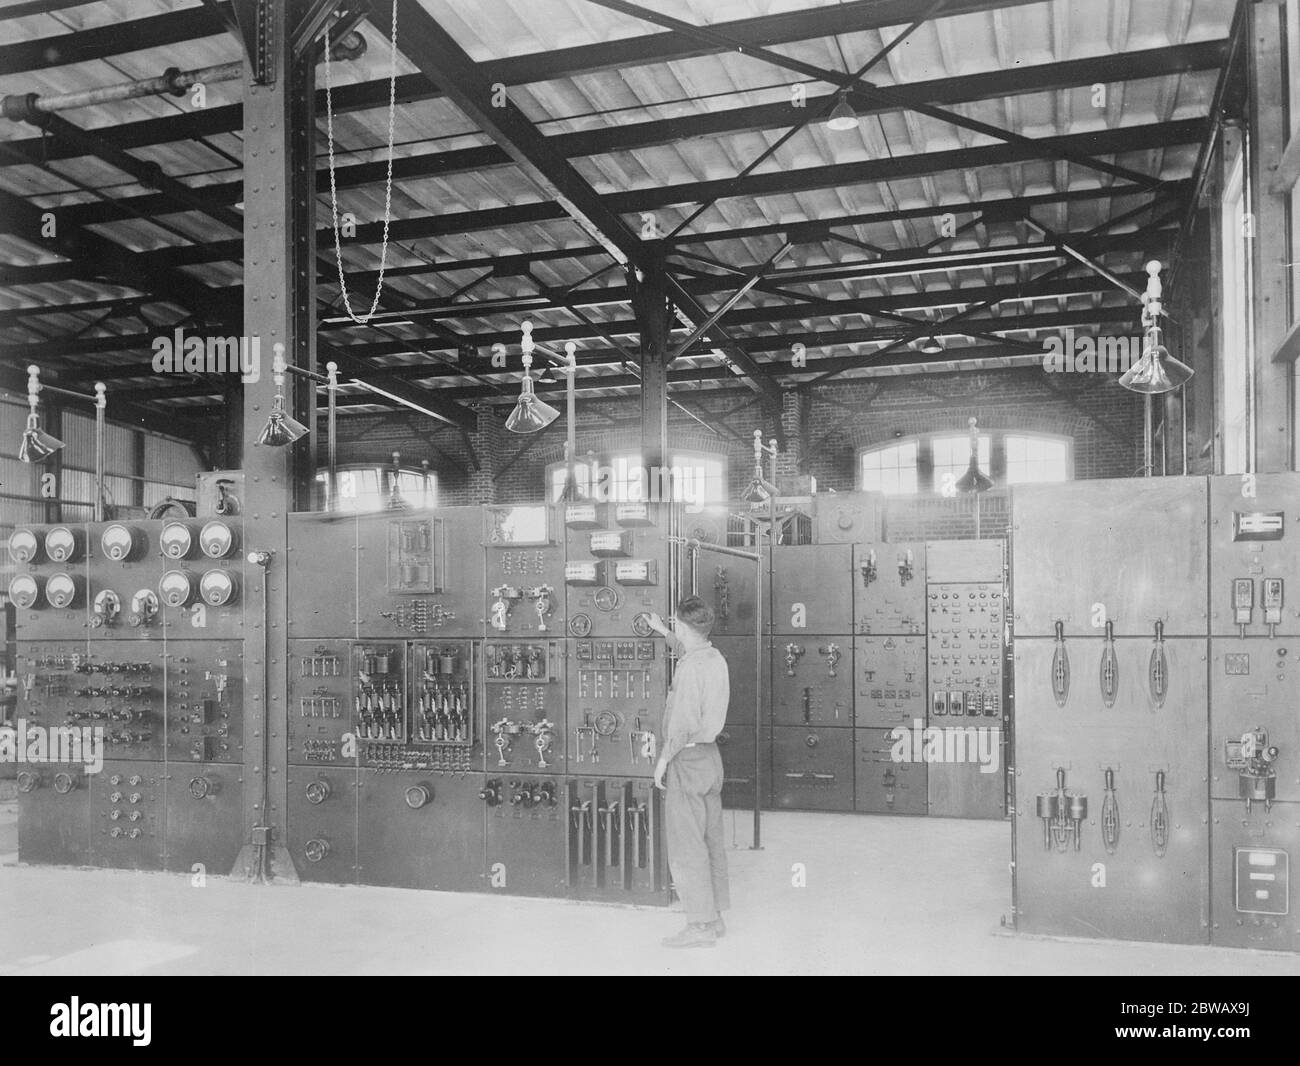 La plus grande station sans fil du monde a ouvert à Rocky point . Près de Port Jefferson New York tableaux principaux 22 novembre 1921 Banque D'Images